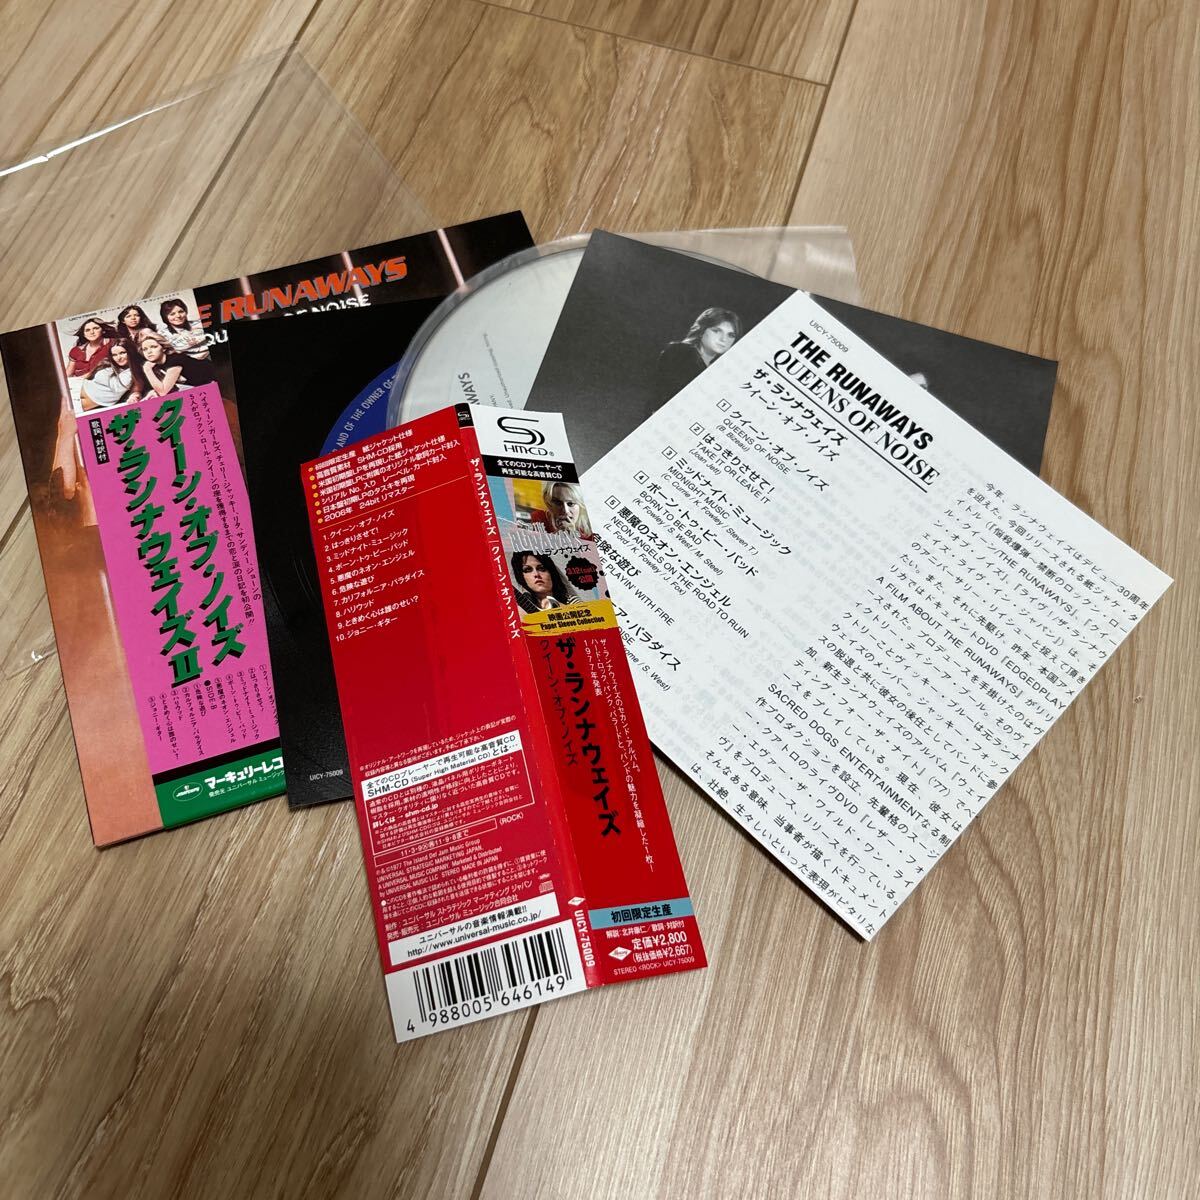 ザ ランナウェイズ/クイーン オブ ノイズ 紙ジャケ SHM-CD 初回限定盤 帯2種 UICY-75009 廃盤の画像3